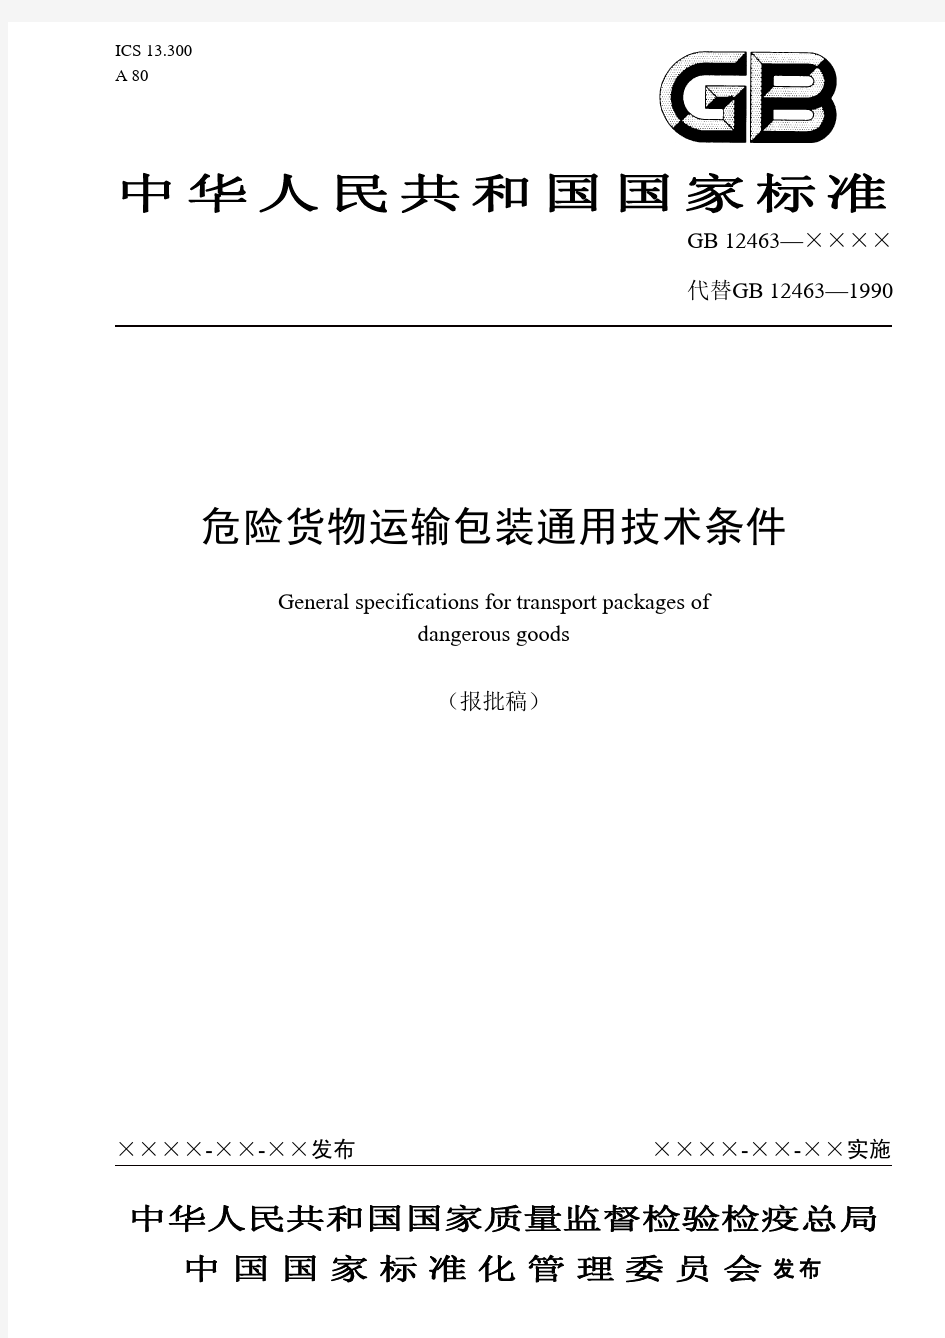 中华人民共和国国家标准危险货物运输包装通用技术条件